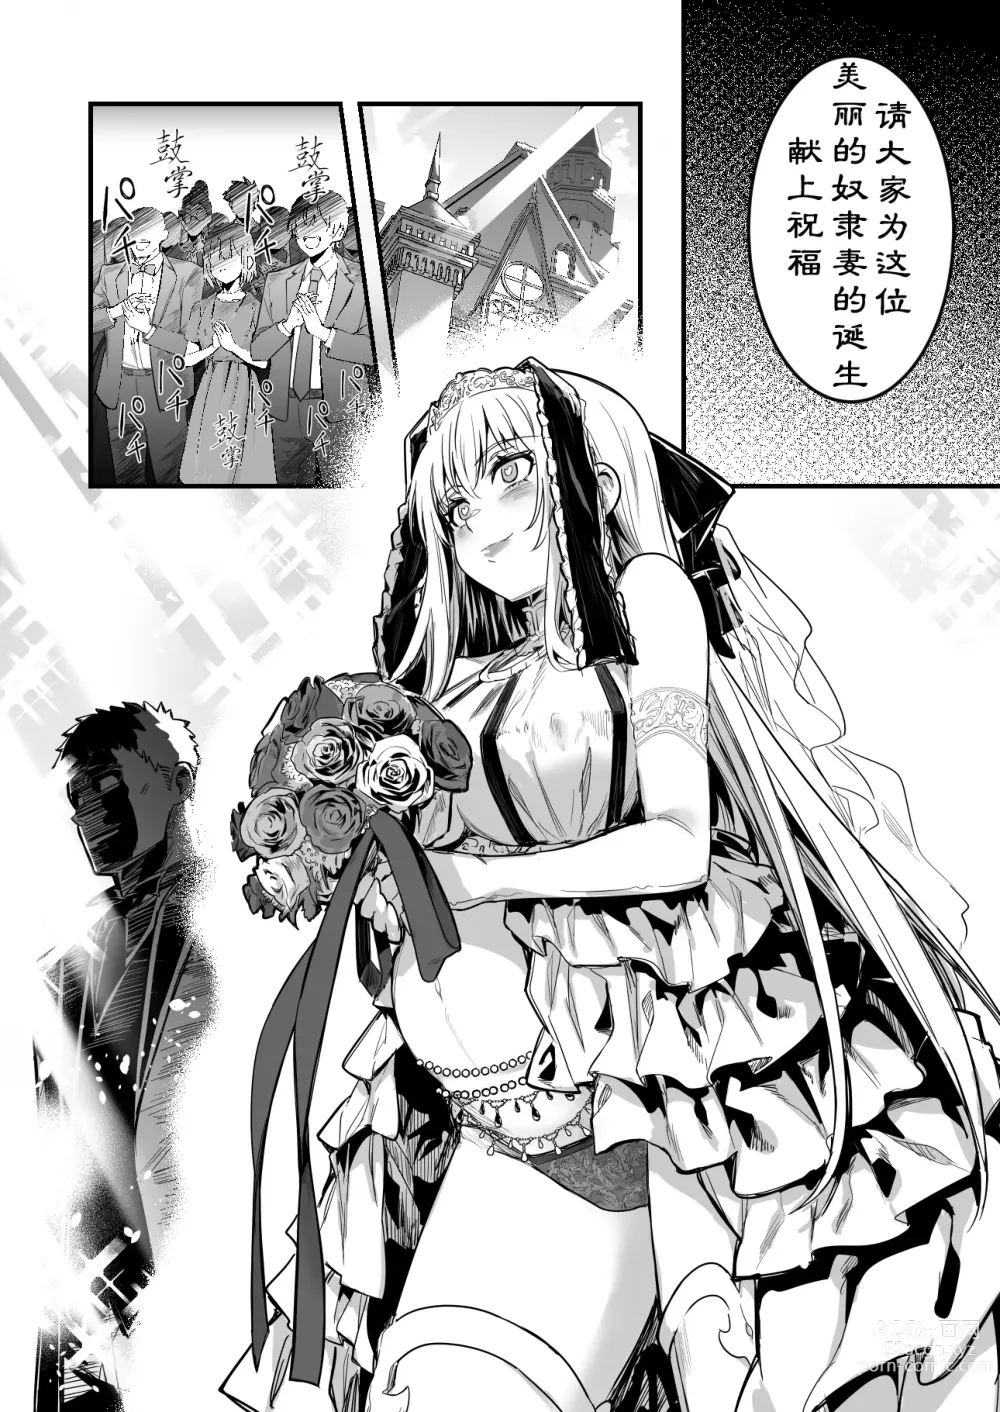 Page 7 of doujinshi 在洗脑婚礼被洗脑，成为奴隶妻，挎着西瓜肚结婚的冒险者酱